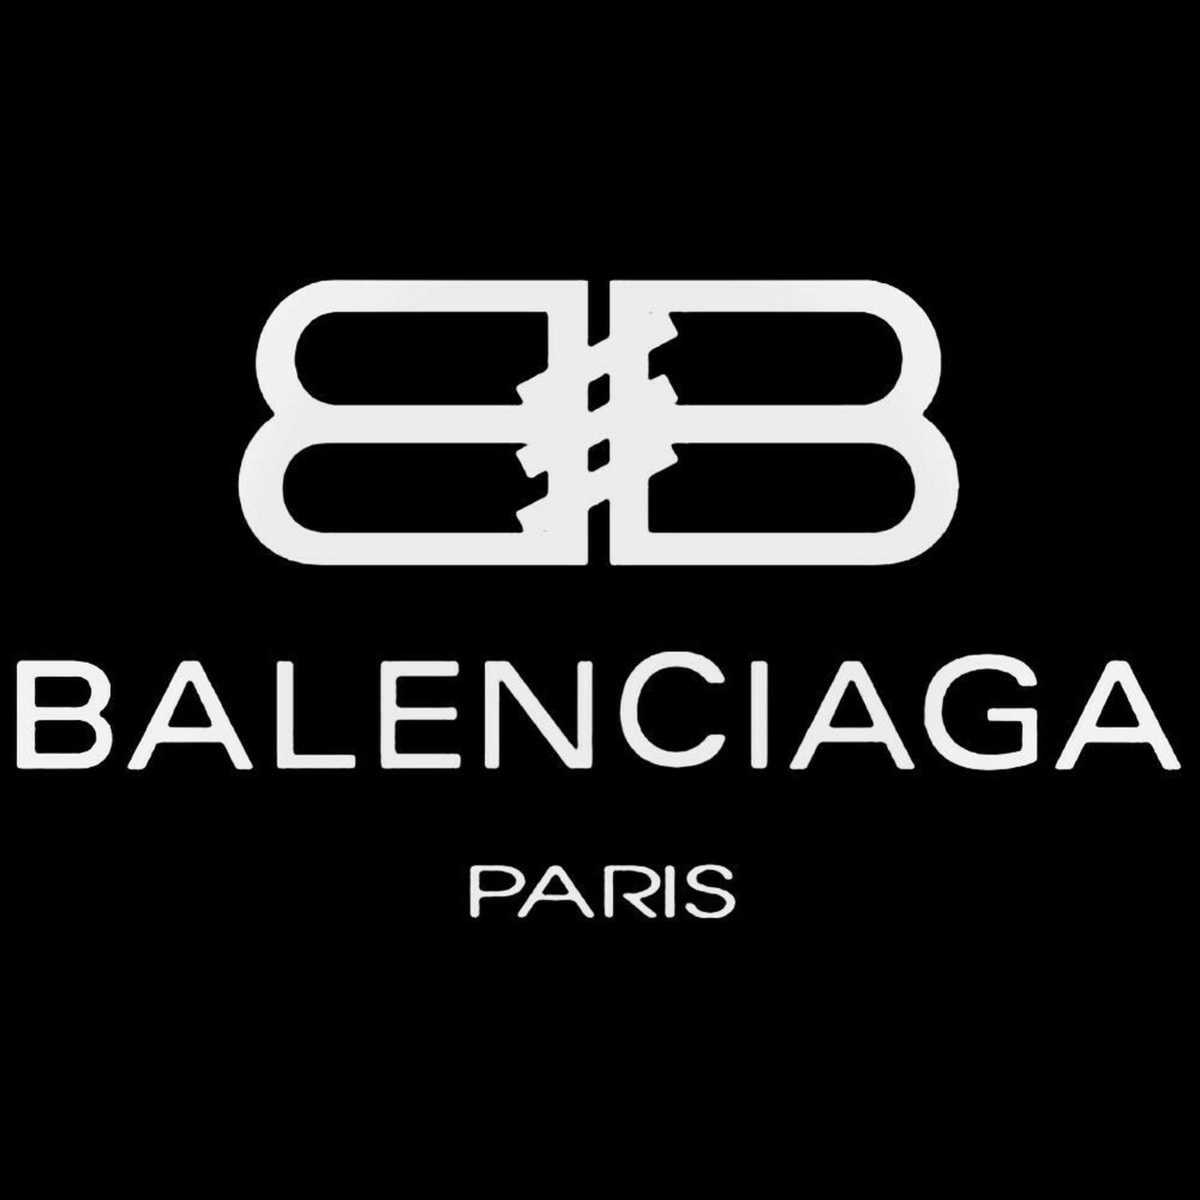 Balenciaga is Best Luxury Brands